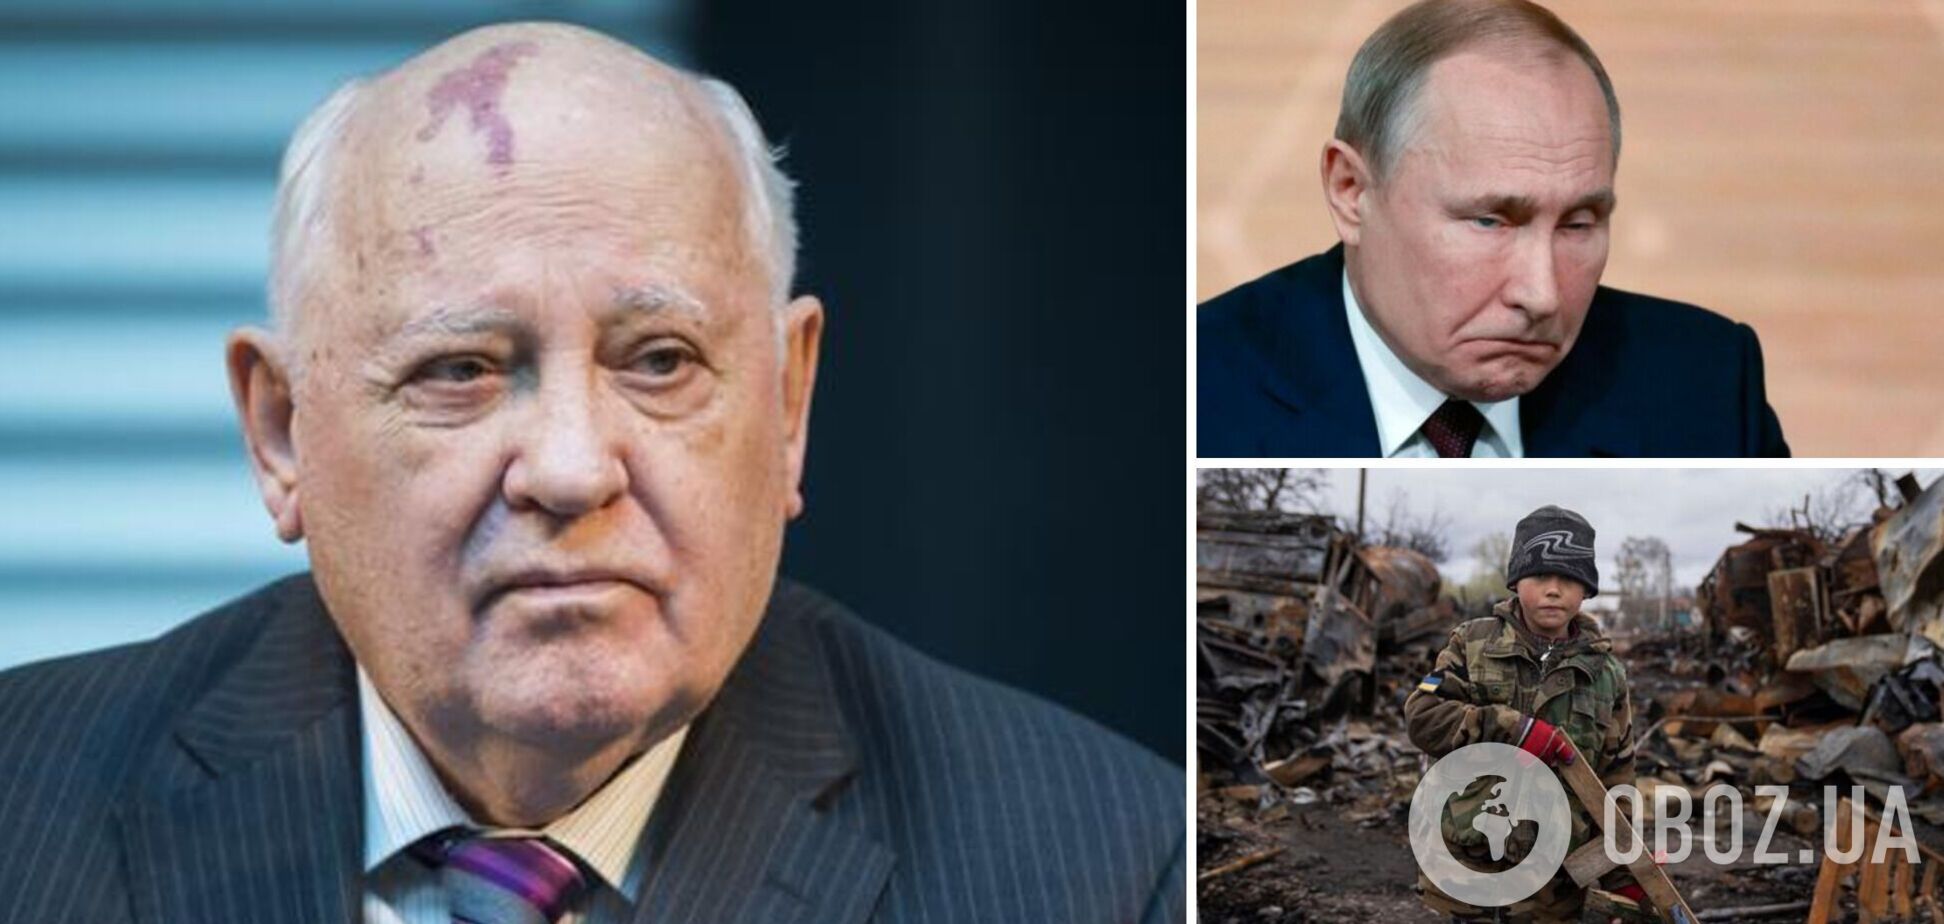 Стало известно, как Горбачев относится к войне РФ против Украины: журналист объяснил его молчание